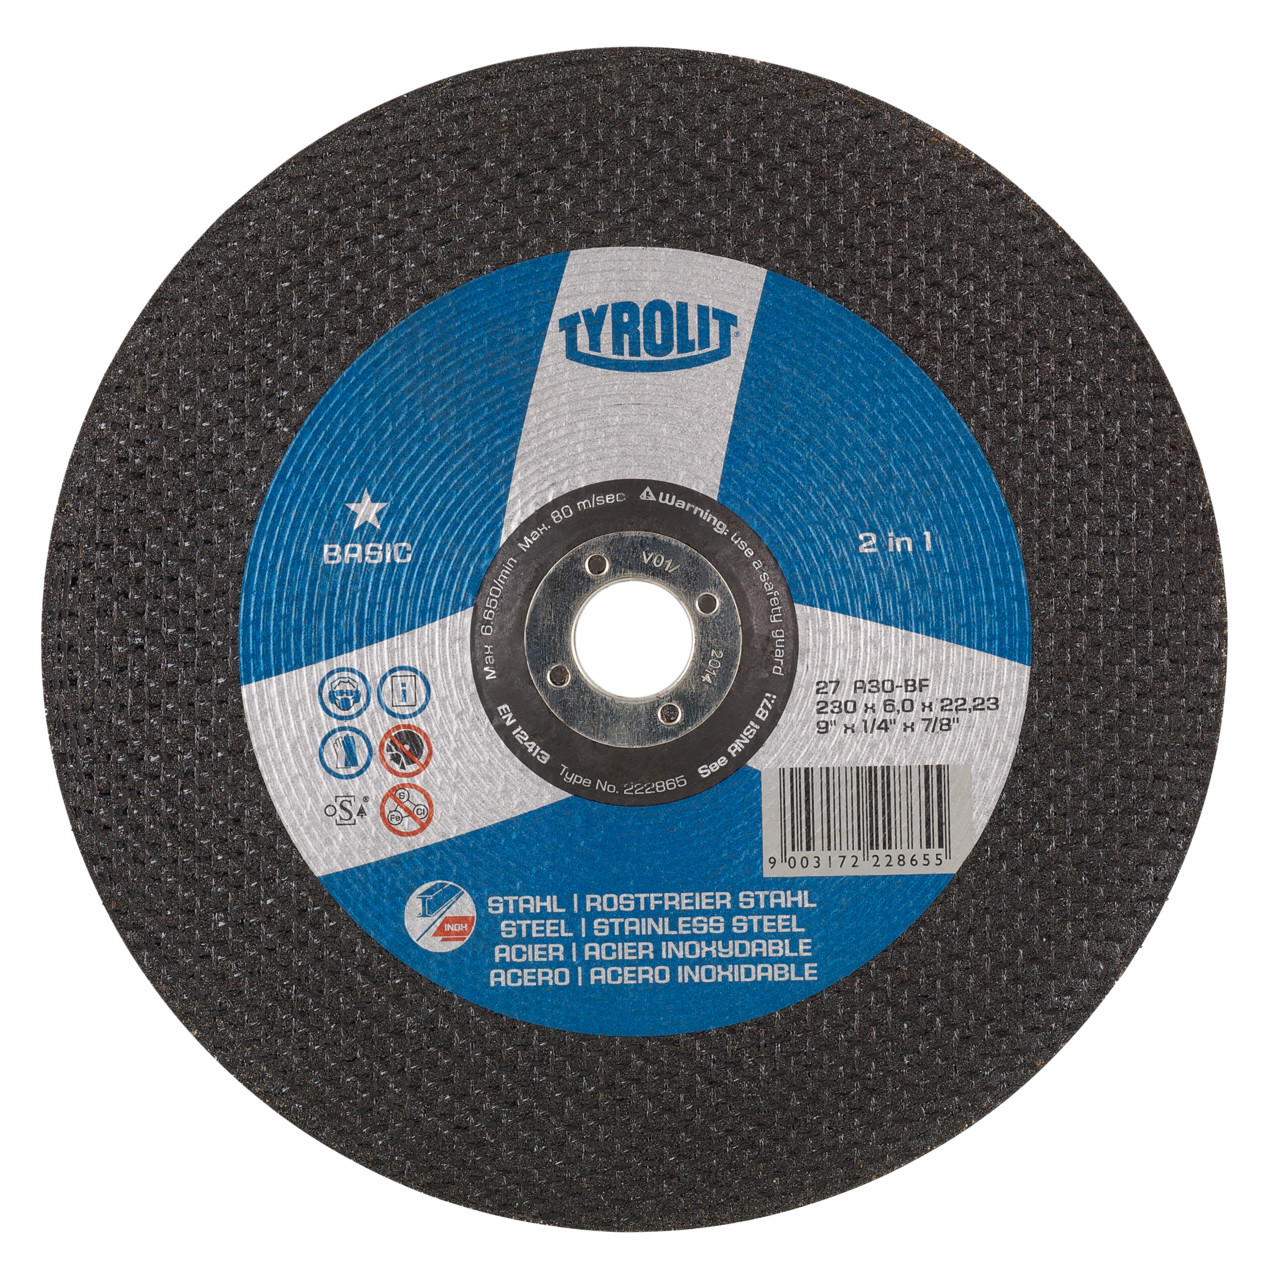 TYROLIT disco de desbaste DxUxH 150x4x22,23 2en1 para acero y acero inoxidable, forma: 27 - versión offset, Art. 34176633